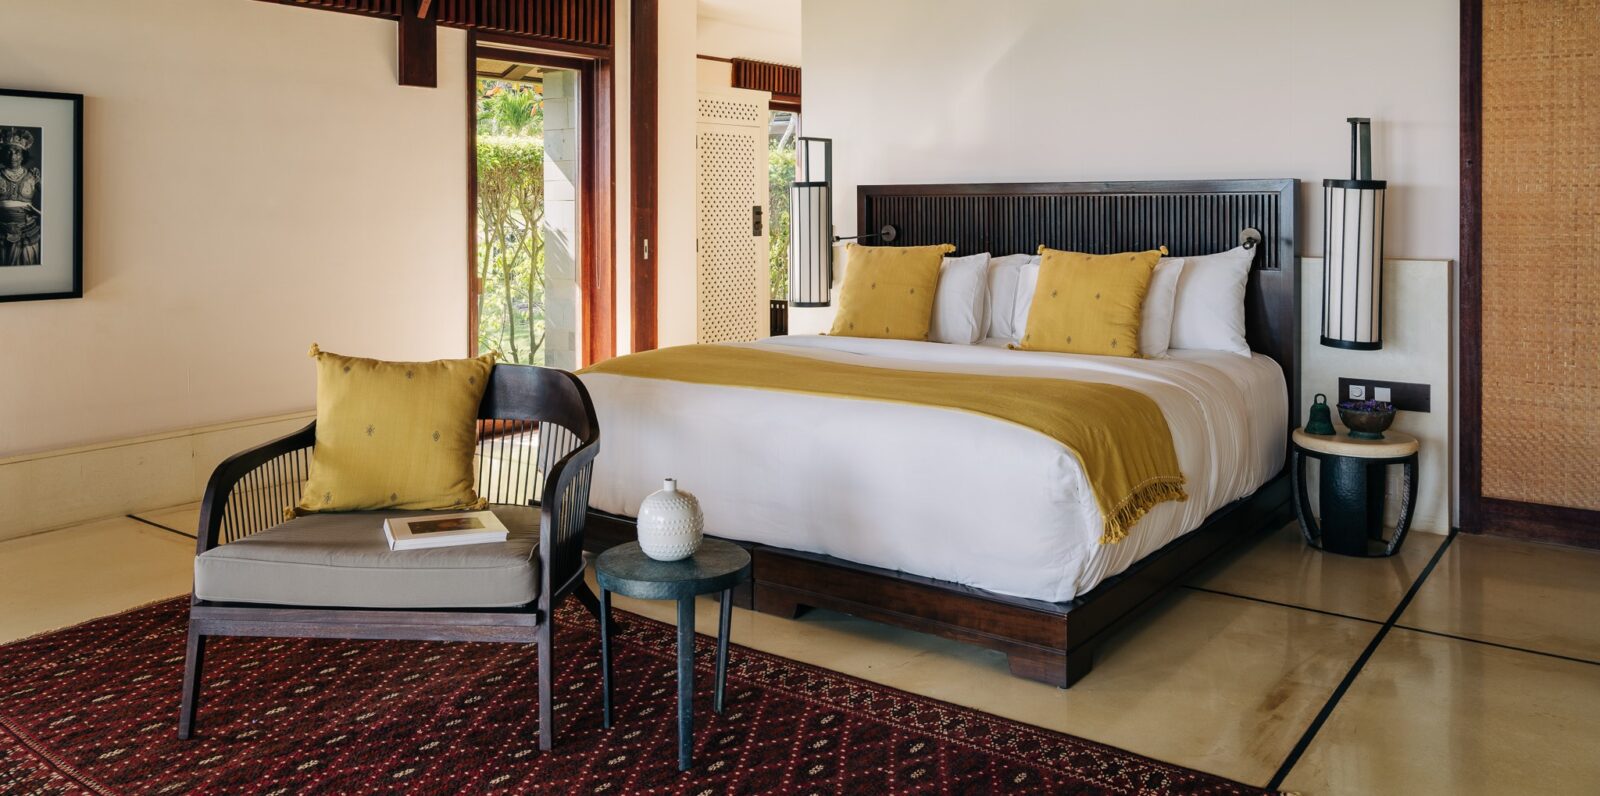 ANI Sri Lanka – Accommodation – Classic Suite